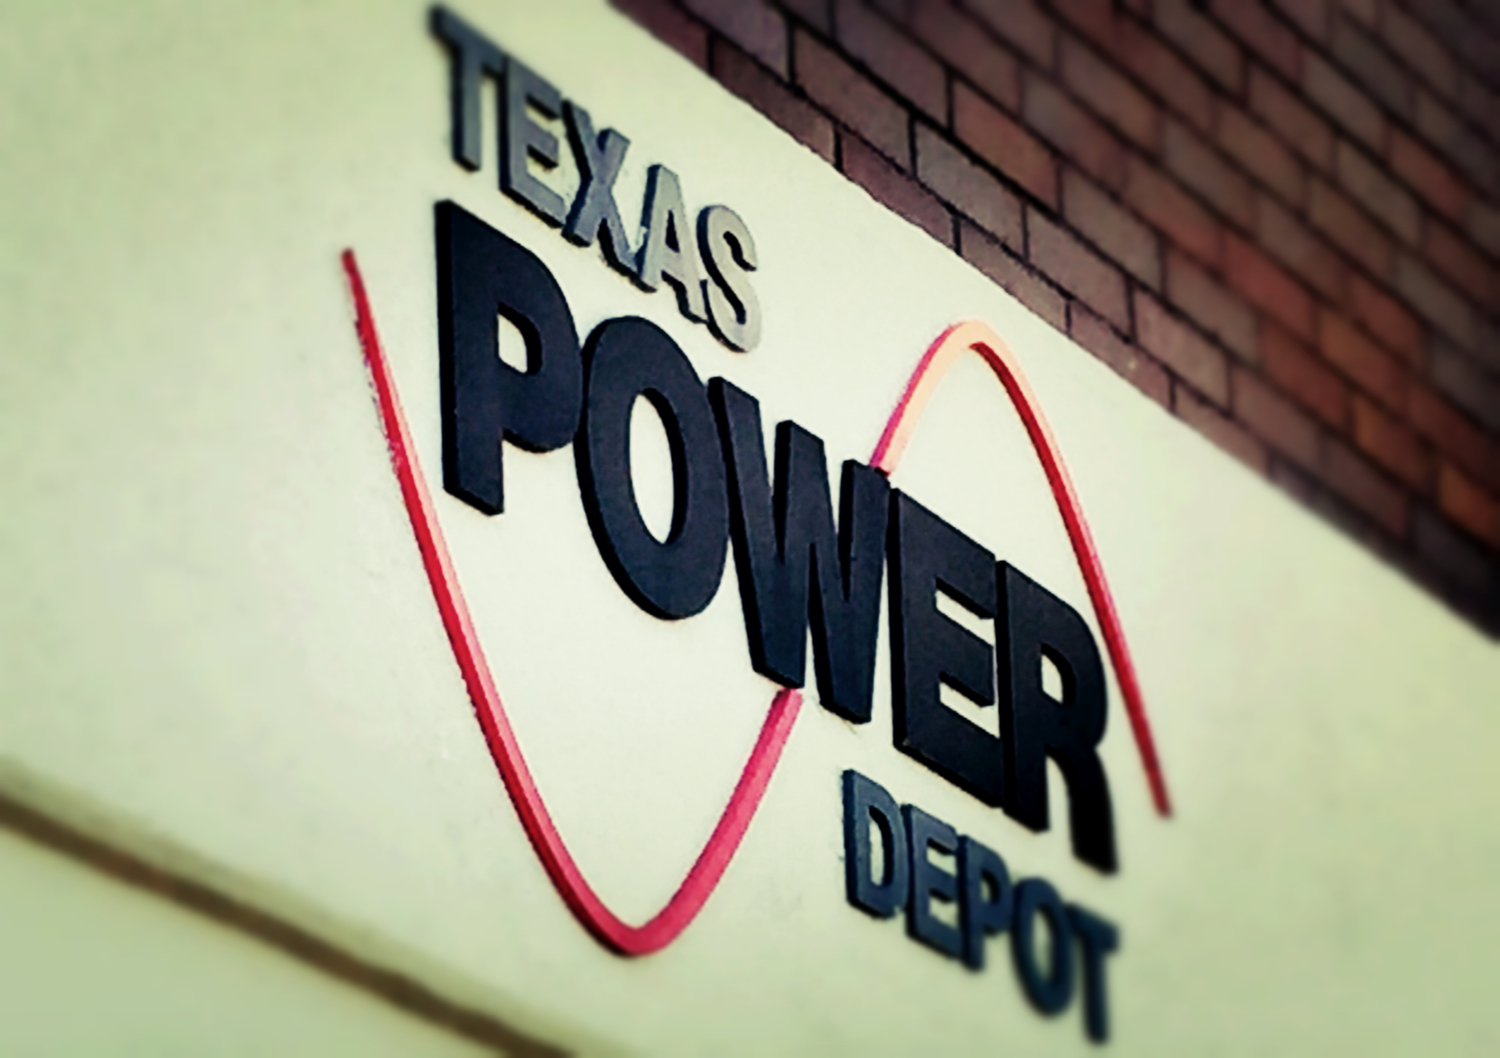 Texas Power Depot